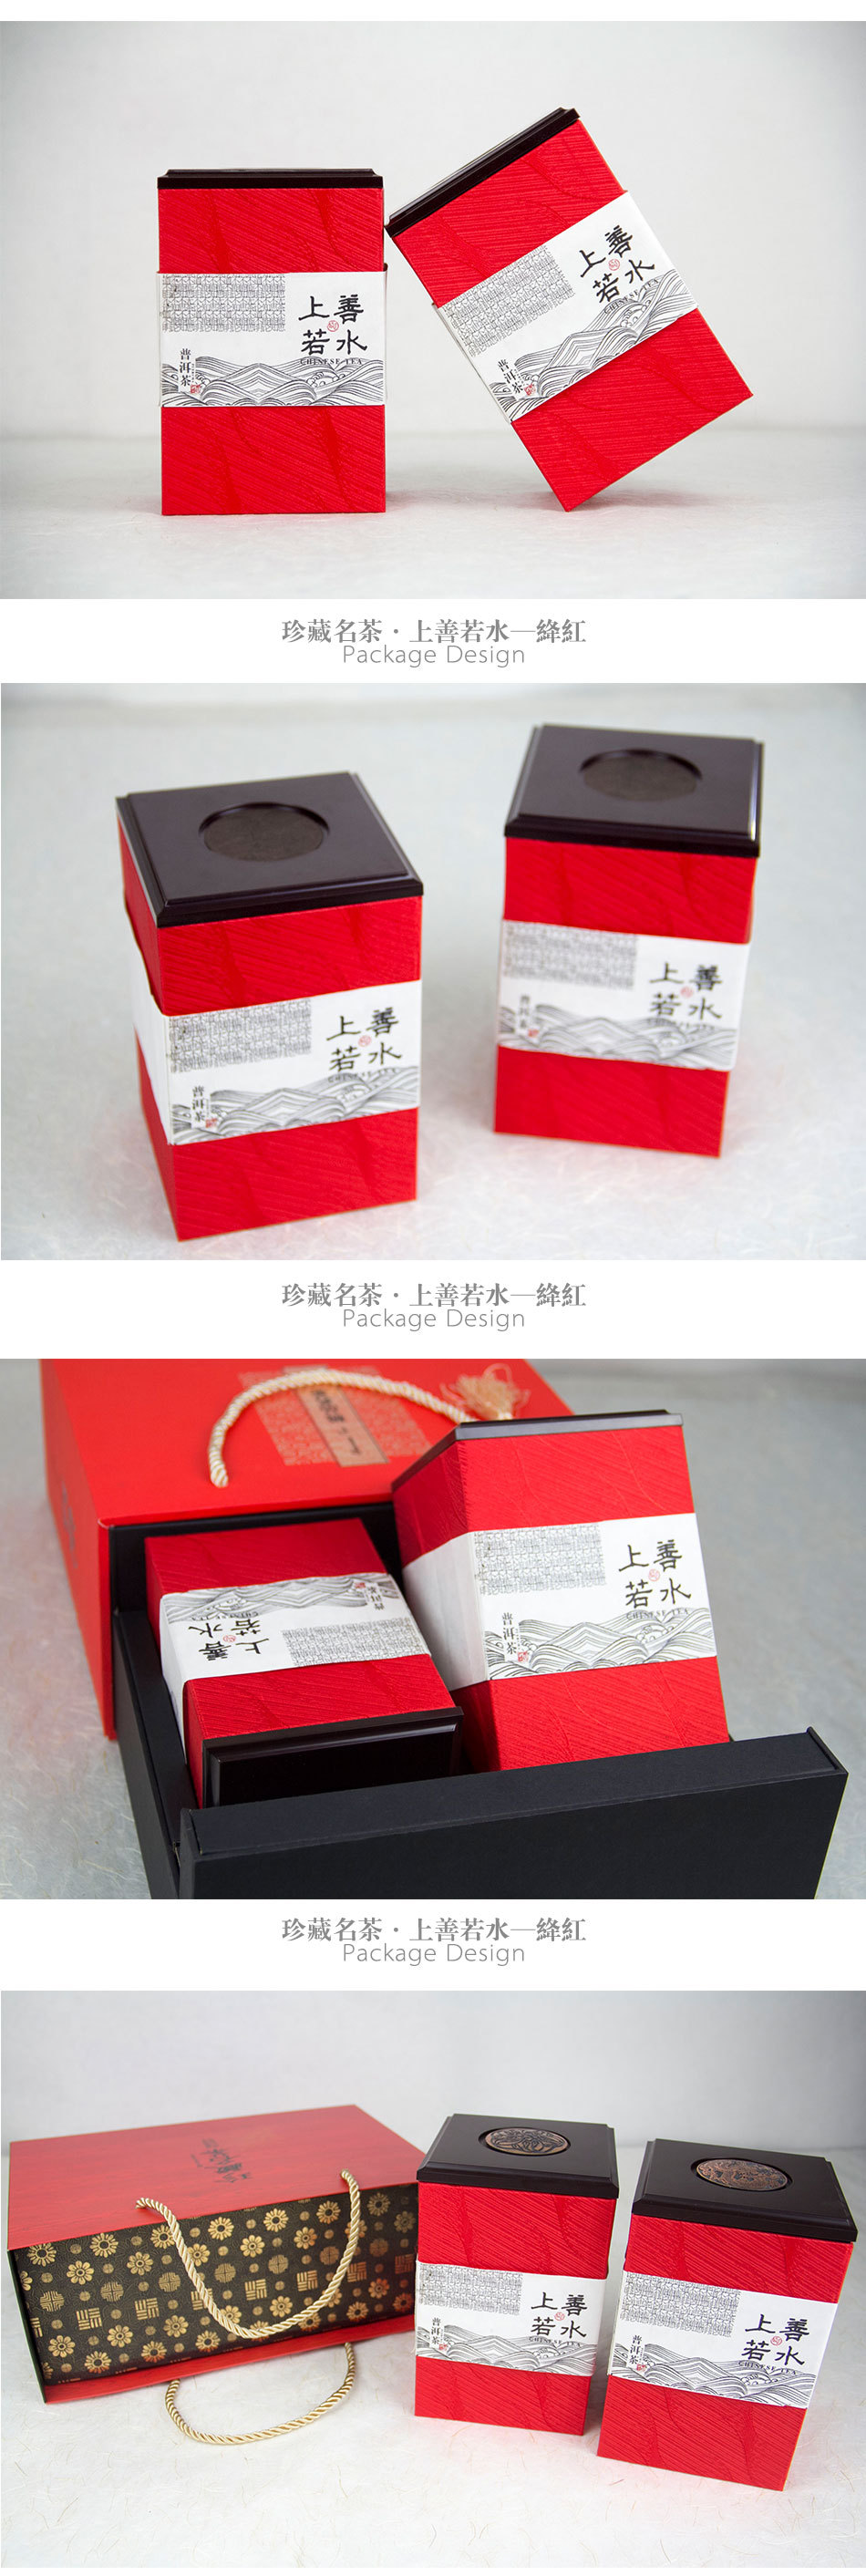 '珍藏茗茶·上善若水'系列包装设计 收录在包联网《包装作品年鉴2016-2017》图3